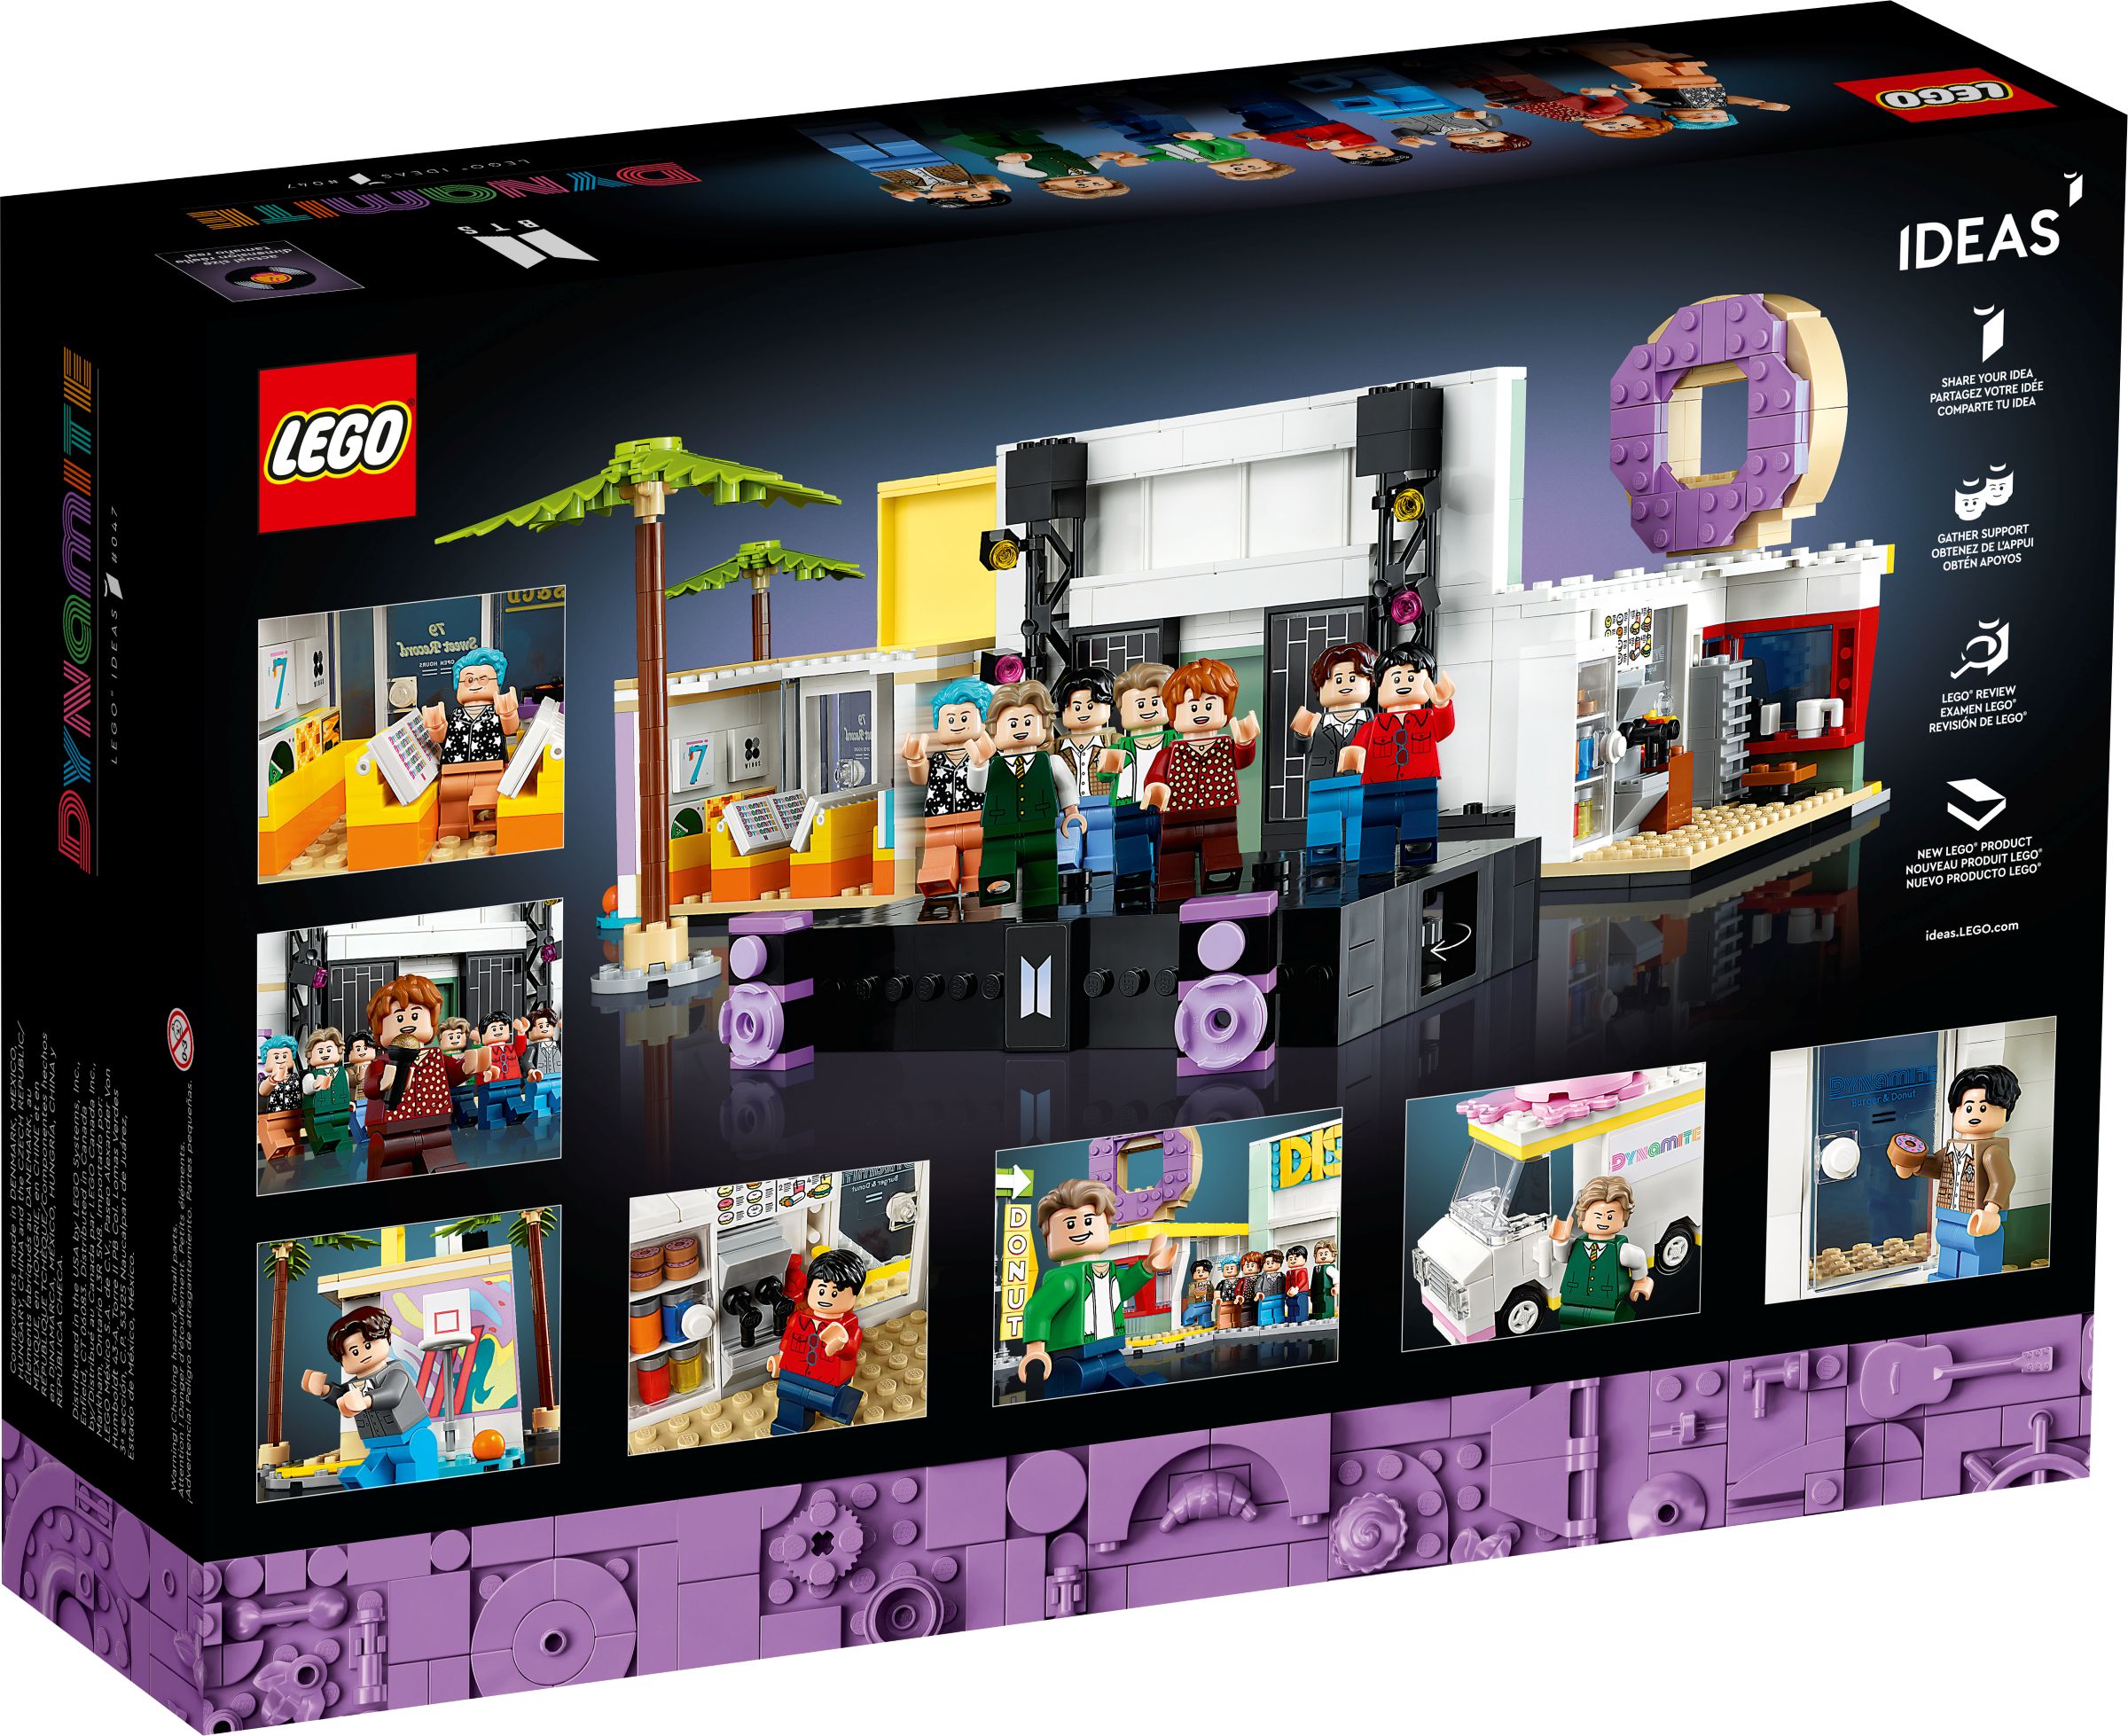 LEGO Ideas 21339 BTS Dynamite LEGO_21339_alt11.jpg